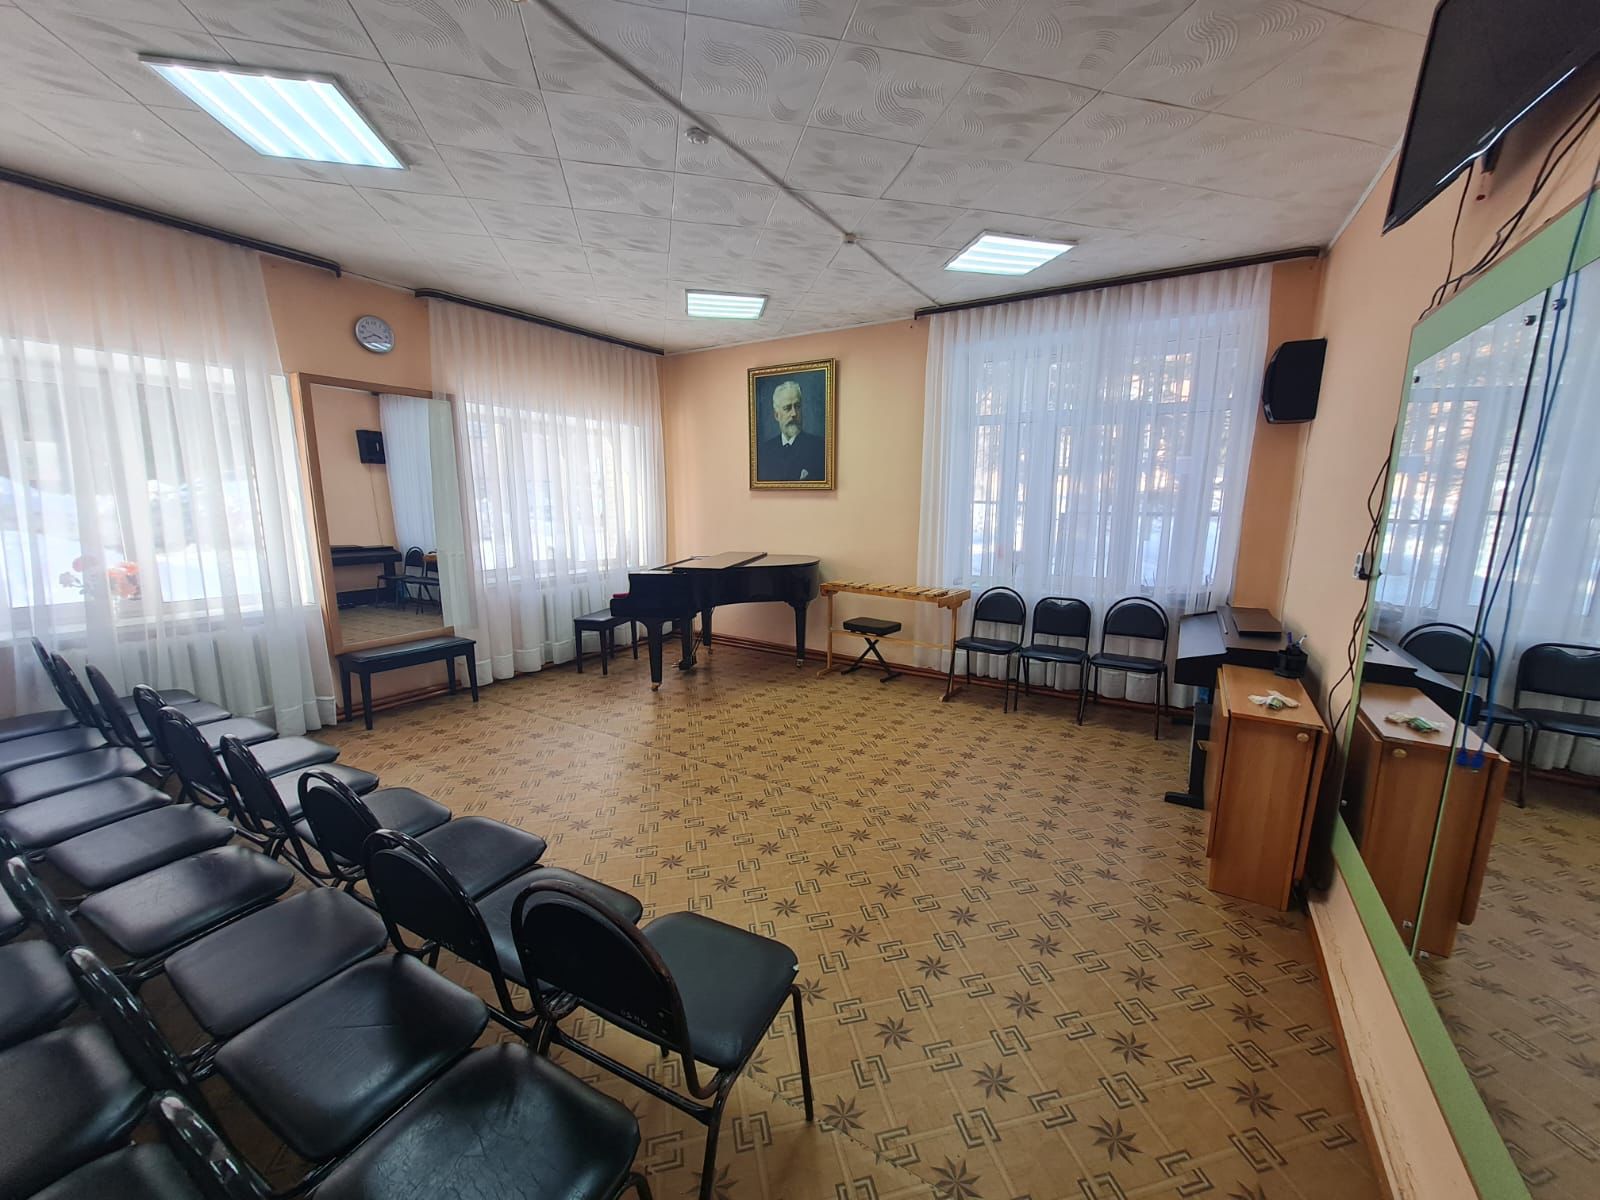 Жителя района проголосовали за ремонт музыкального кабинета в школе искусств.